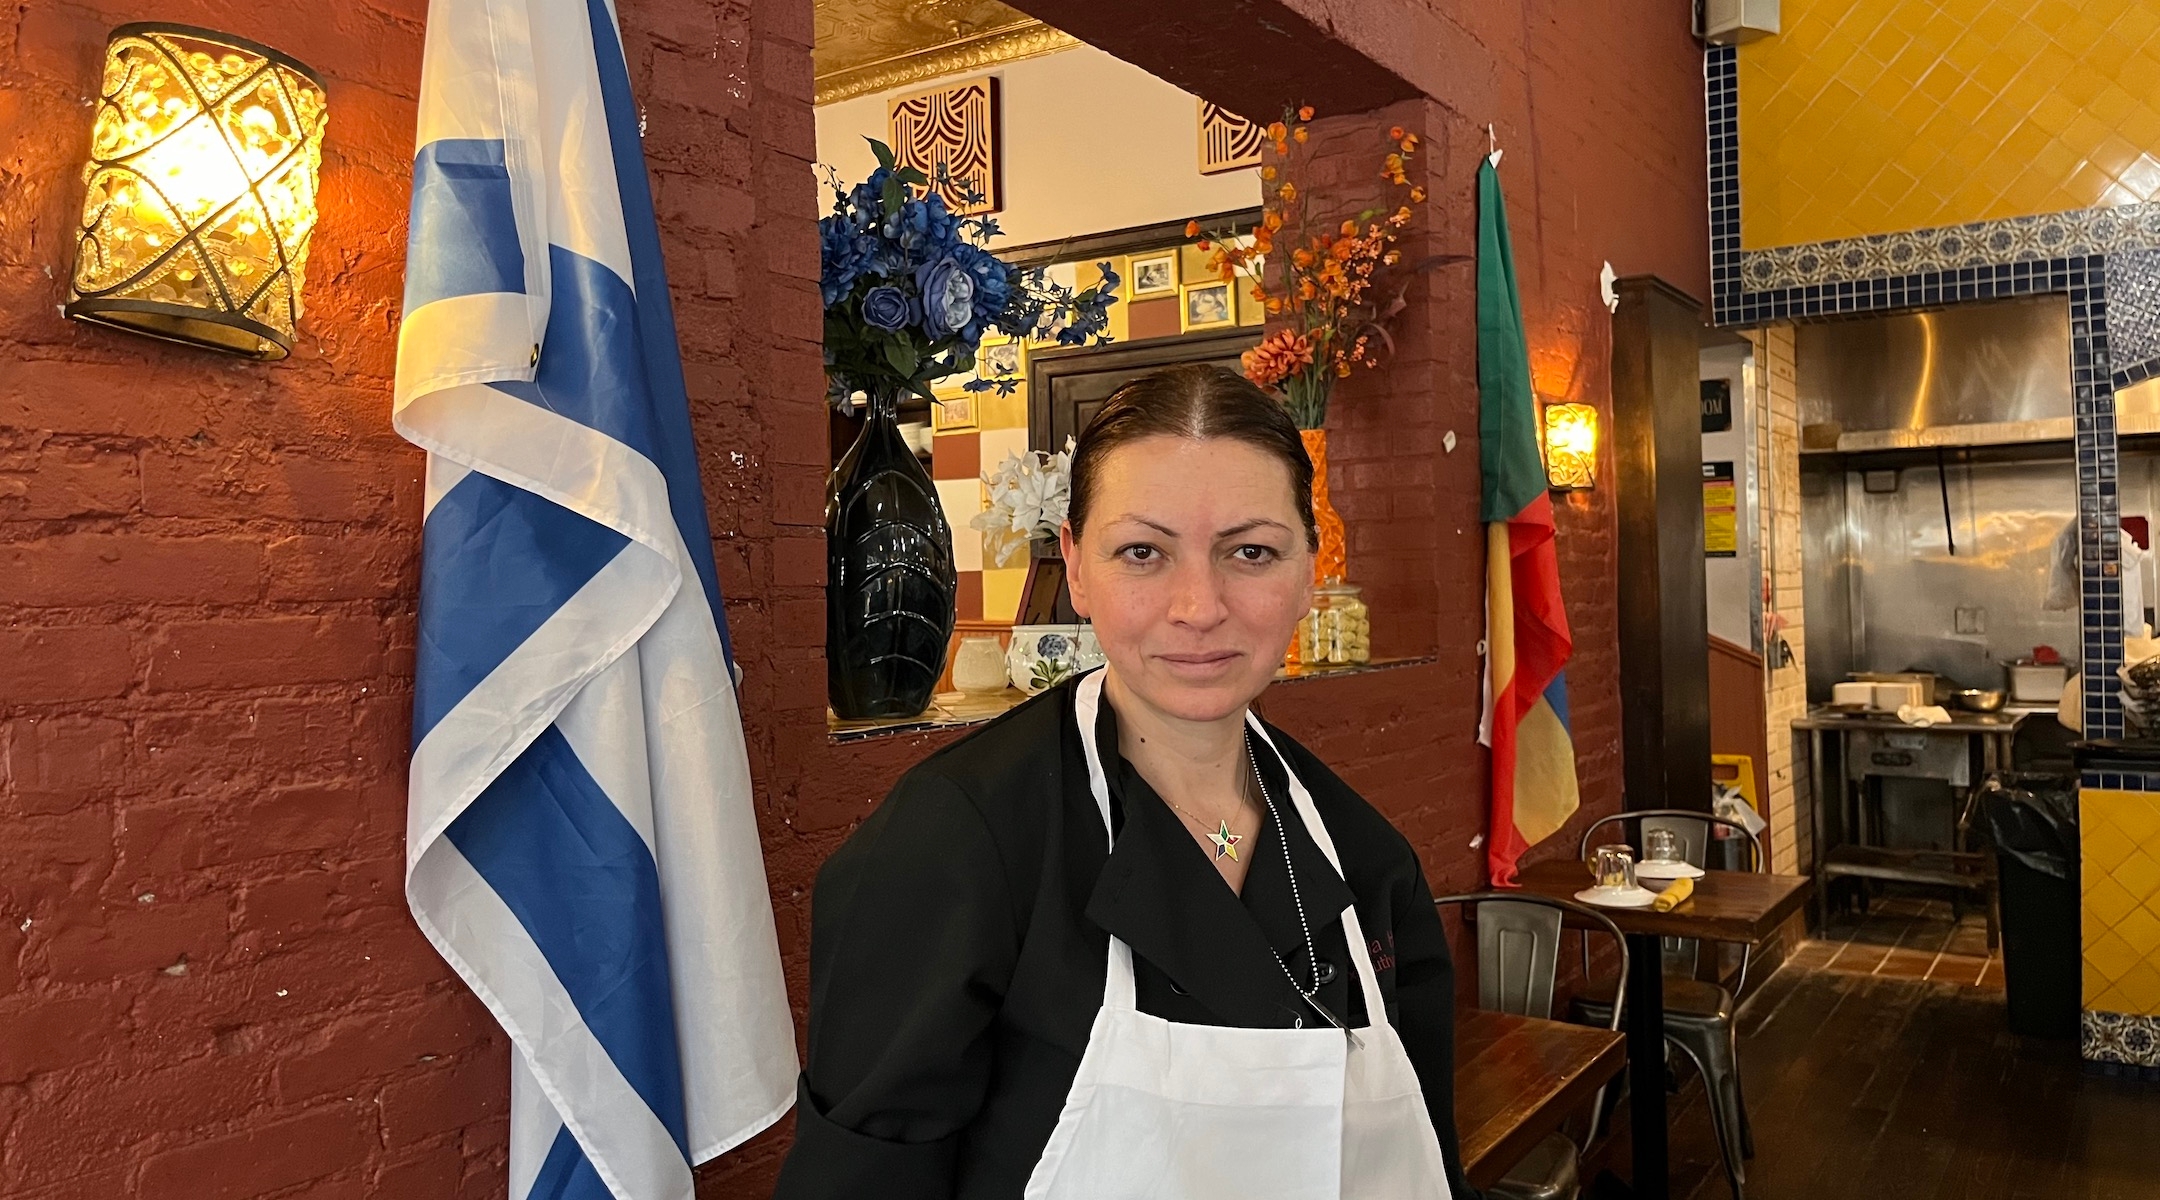 בעקבות הוונדליזם האנטי-ישראלי, מתגלים מאות תושבי ניו יורק יהודים שתומכים במסעדה דרוזית באפר ווסט סייד